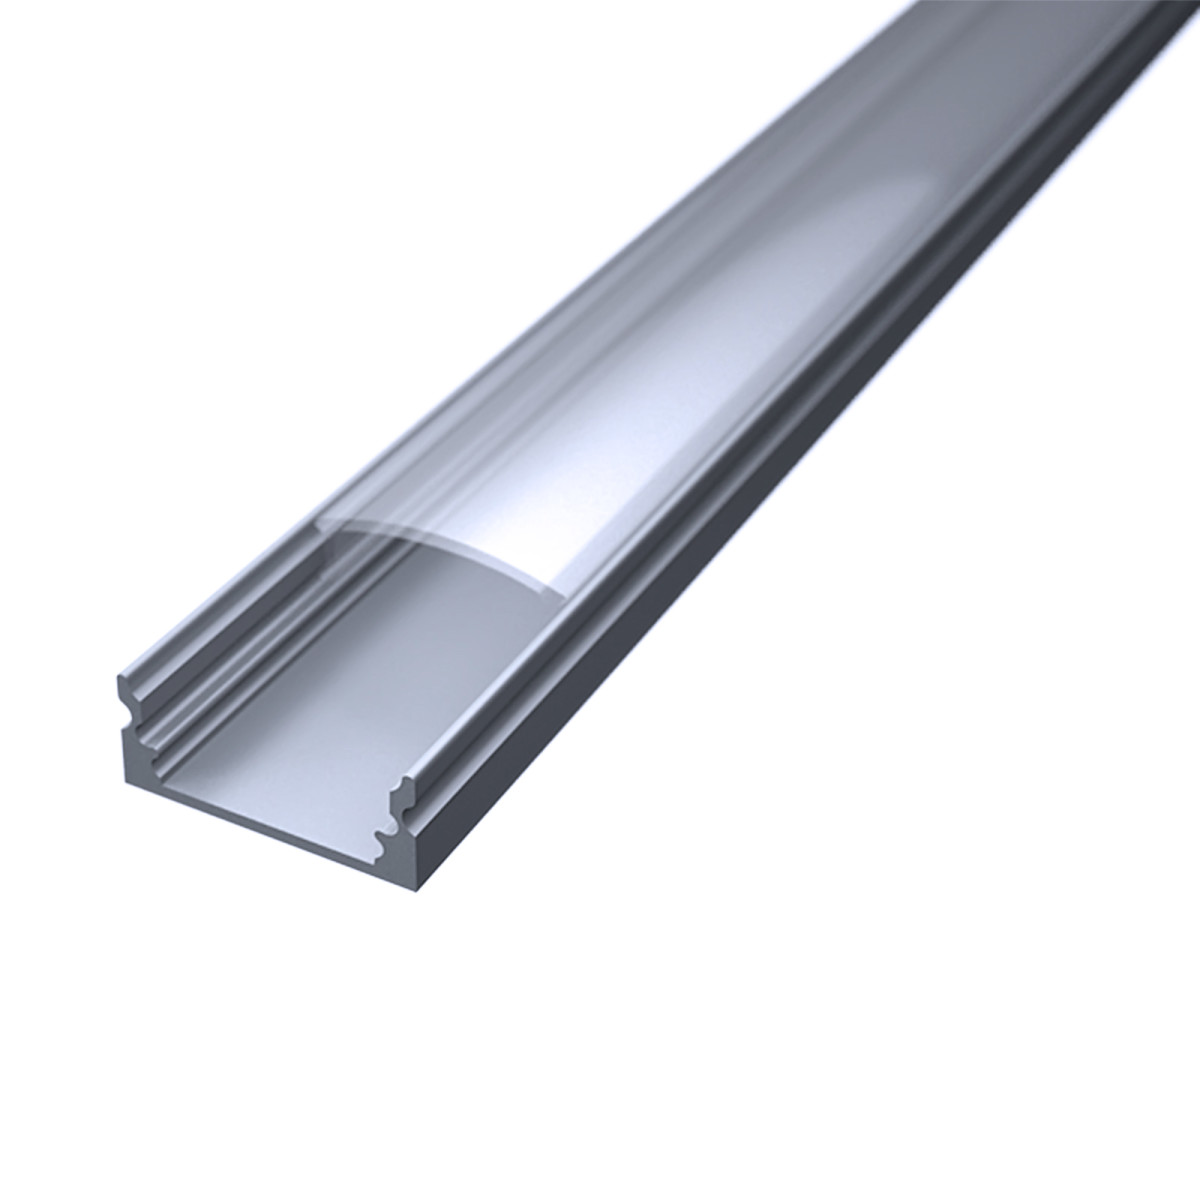 LED Flachprofil "Slim-Line" | Abdeckung transparent | Zuschnitt auf 115cm |